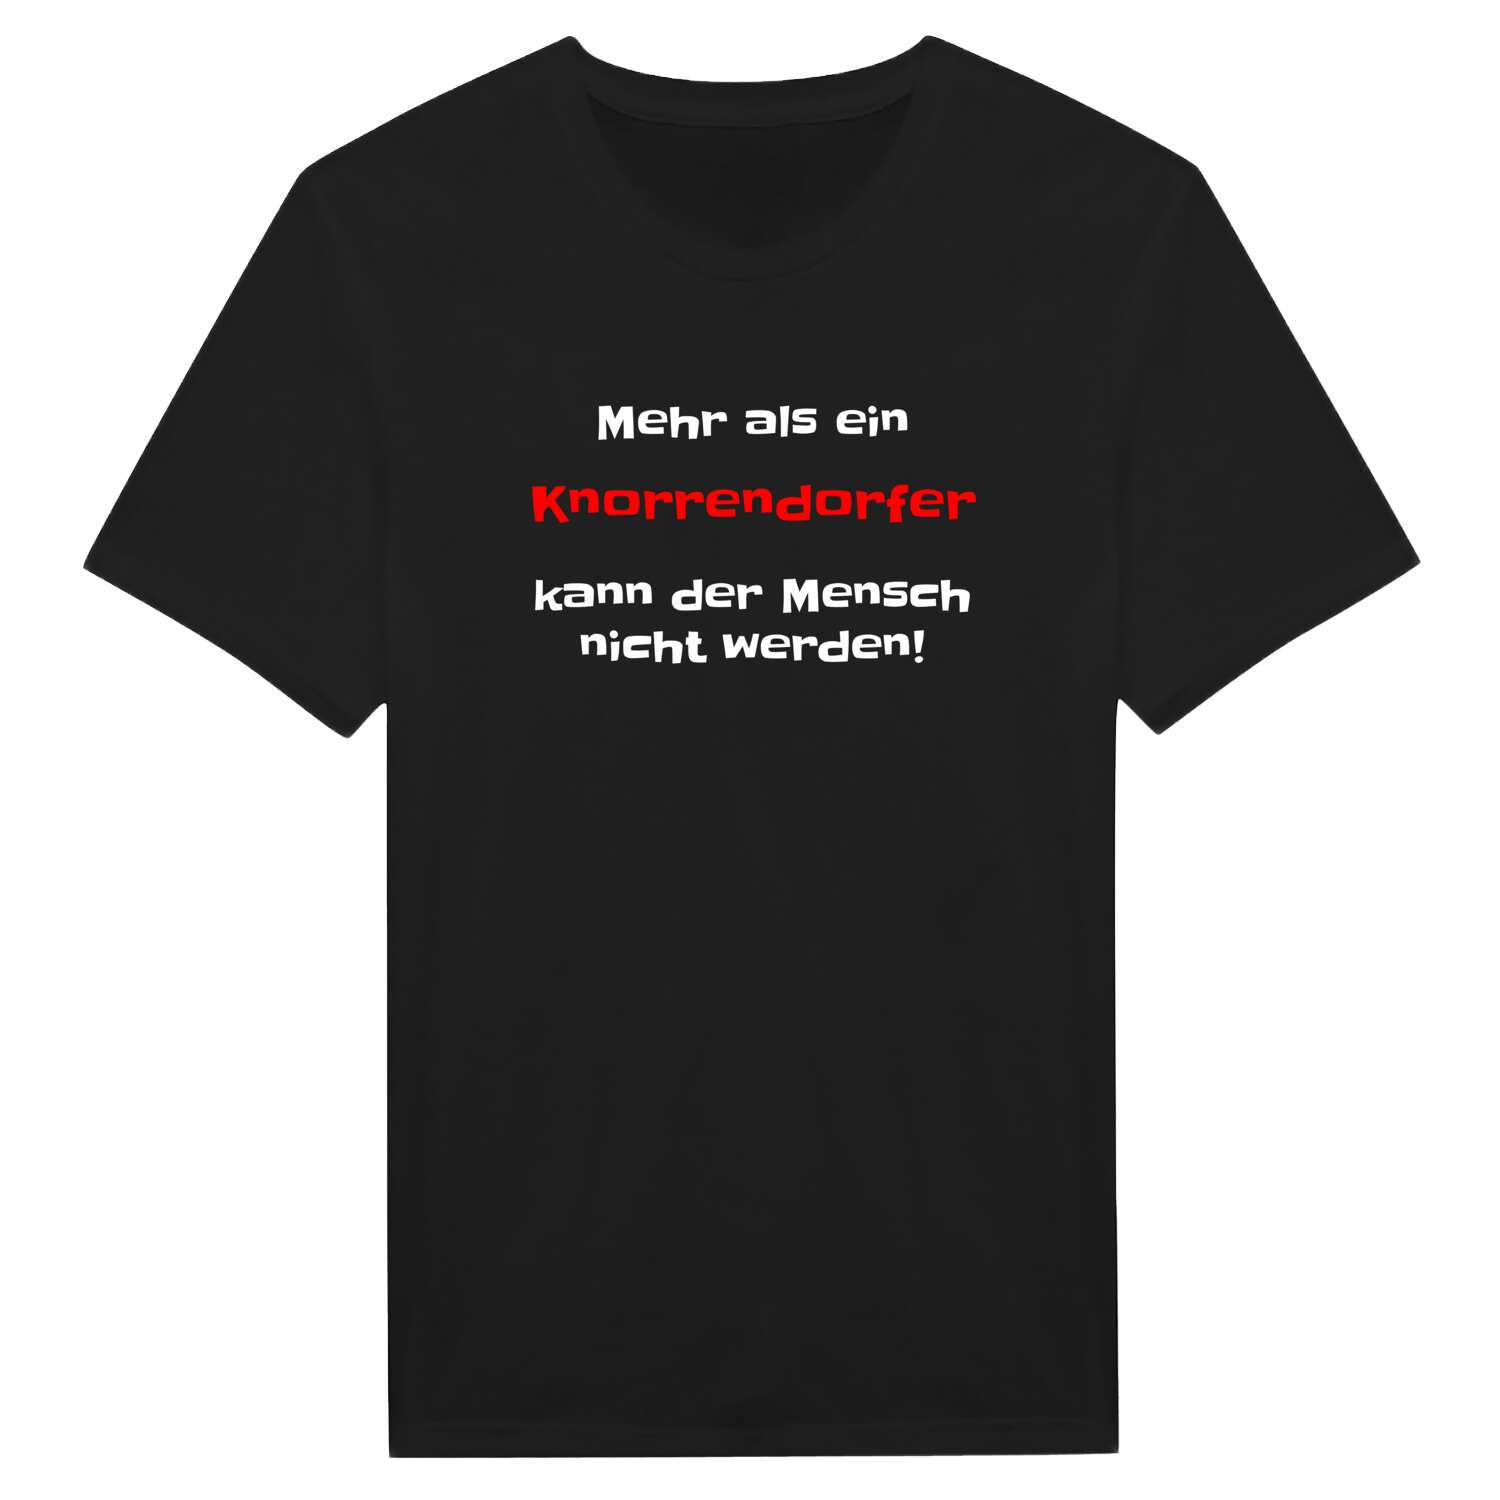 Knorrendorf T-Shirt »Mehr als ein«